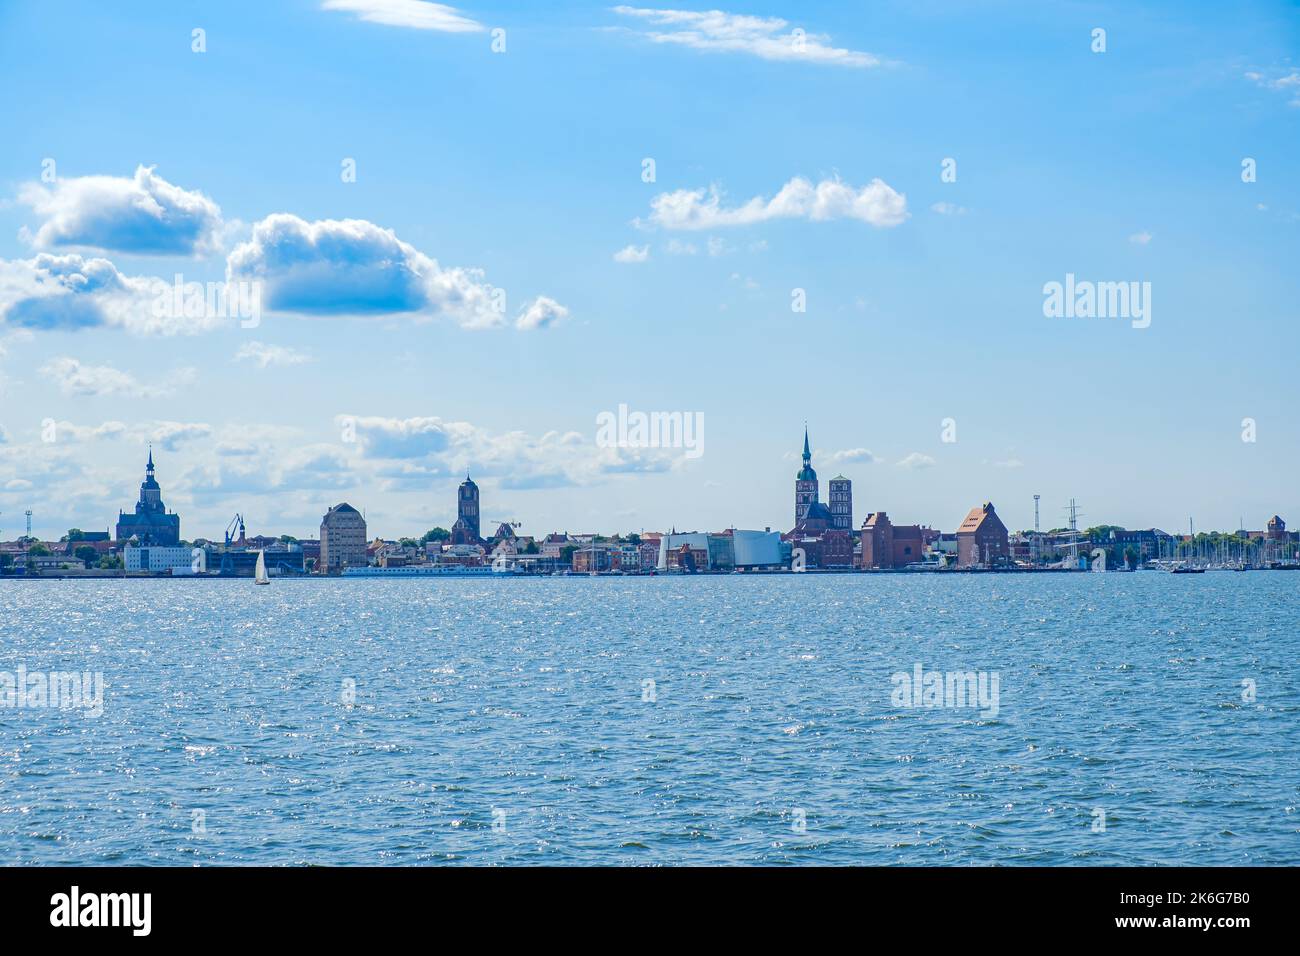 Meeresblick vom Strela Sound auf die Stadtkulisse und Hafenfront der Hansestadt Stralsund, Mecklenburg-Vorpommern, Deutschland. Stockfoto